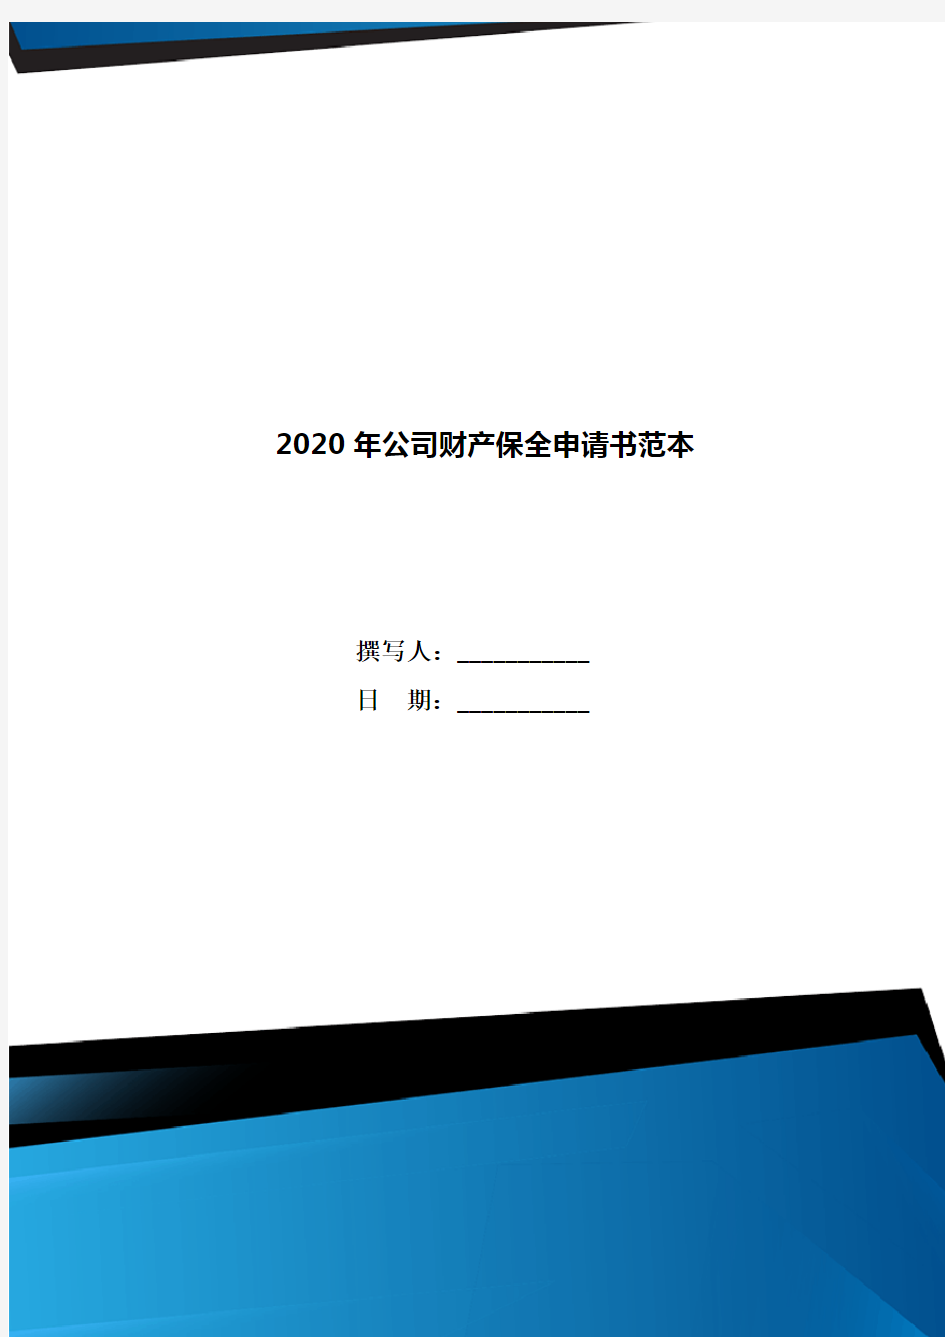 2020年公司财产保全申请书范本